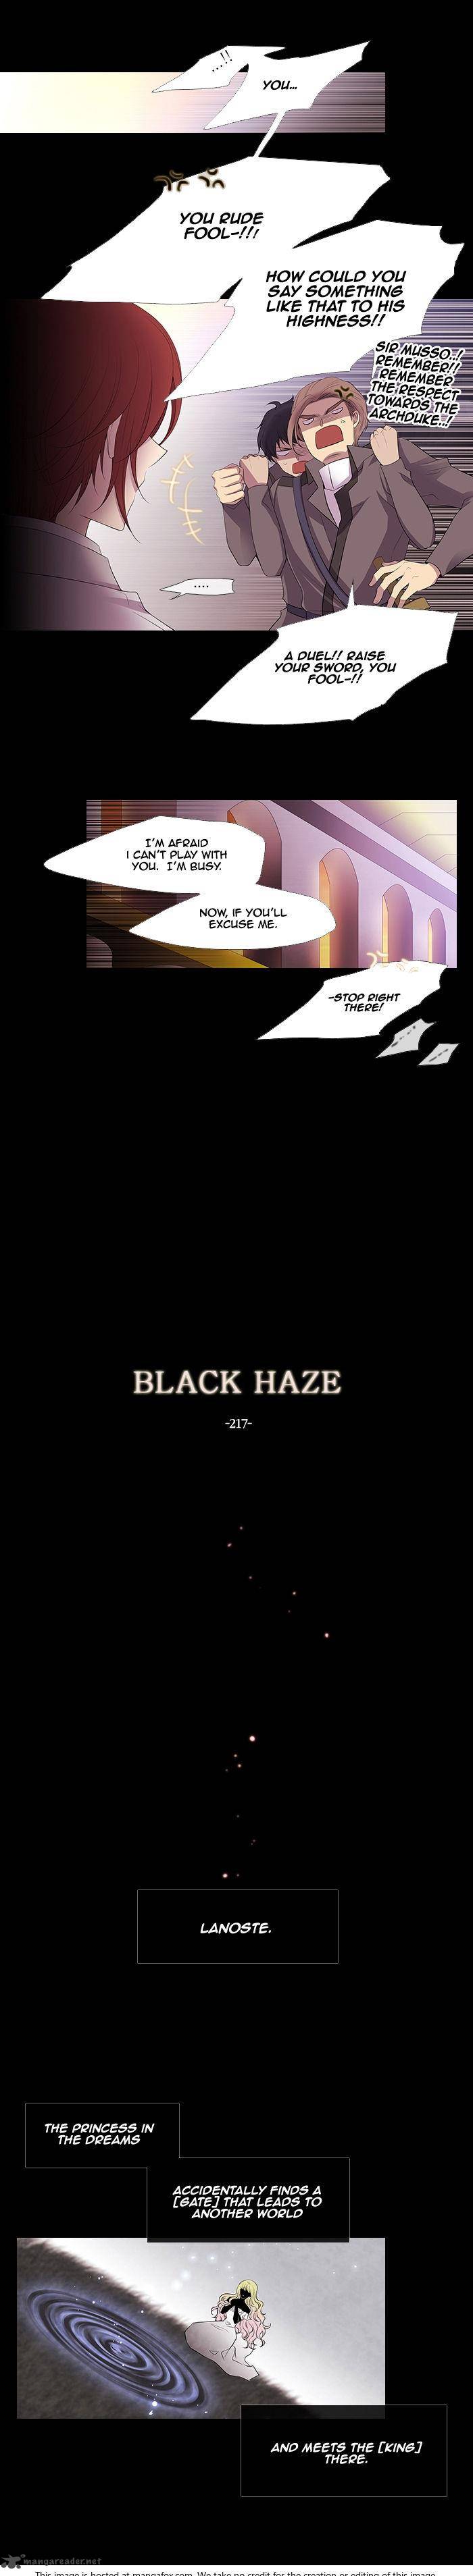 Black Haze 219 6